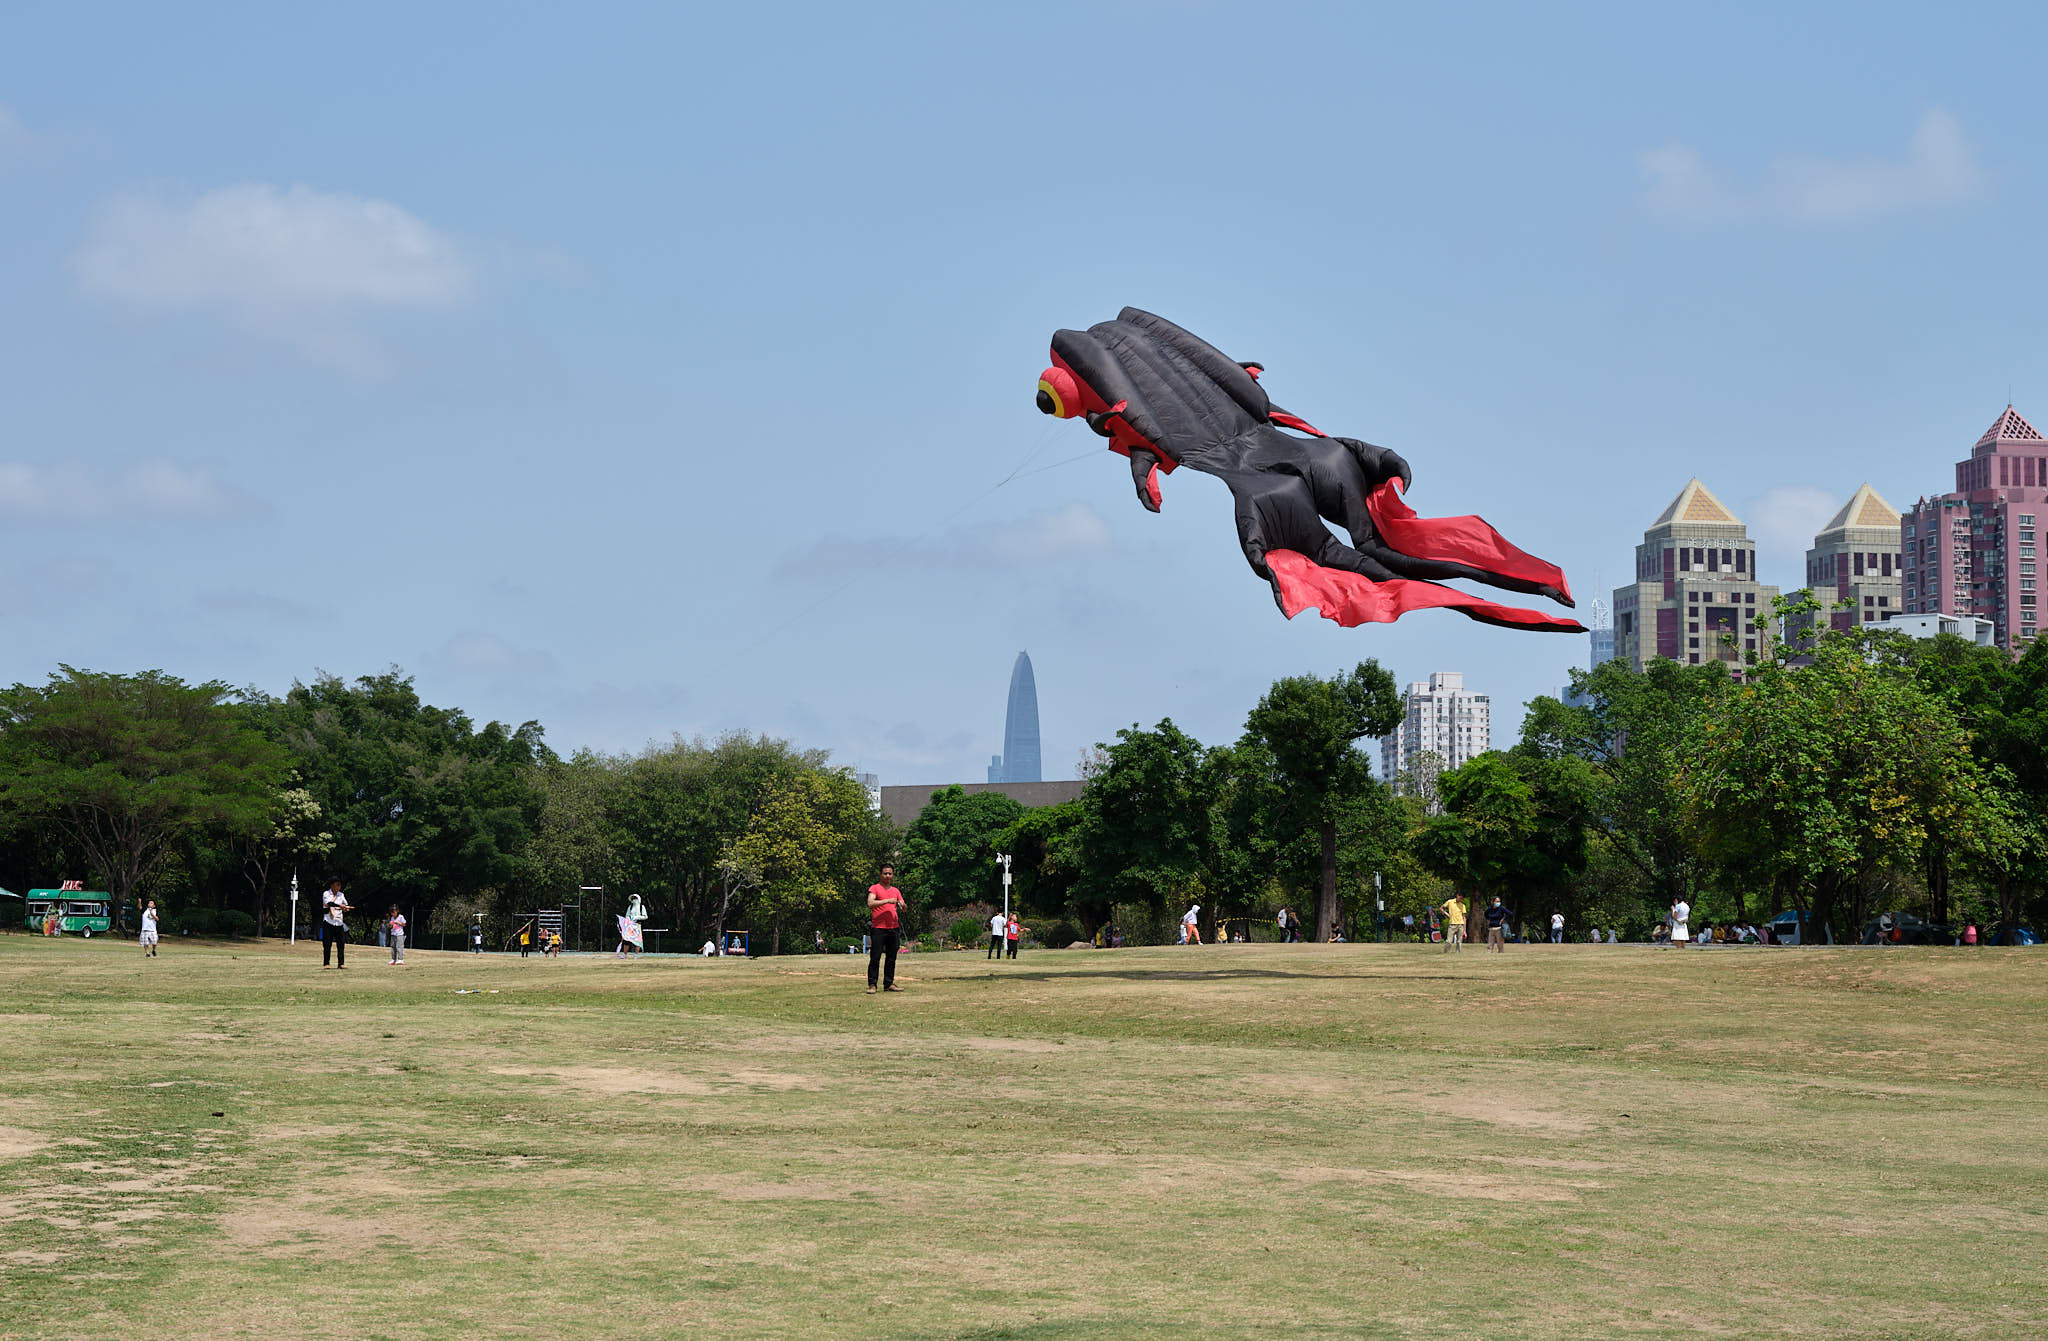 Kite flying in Shenzhen